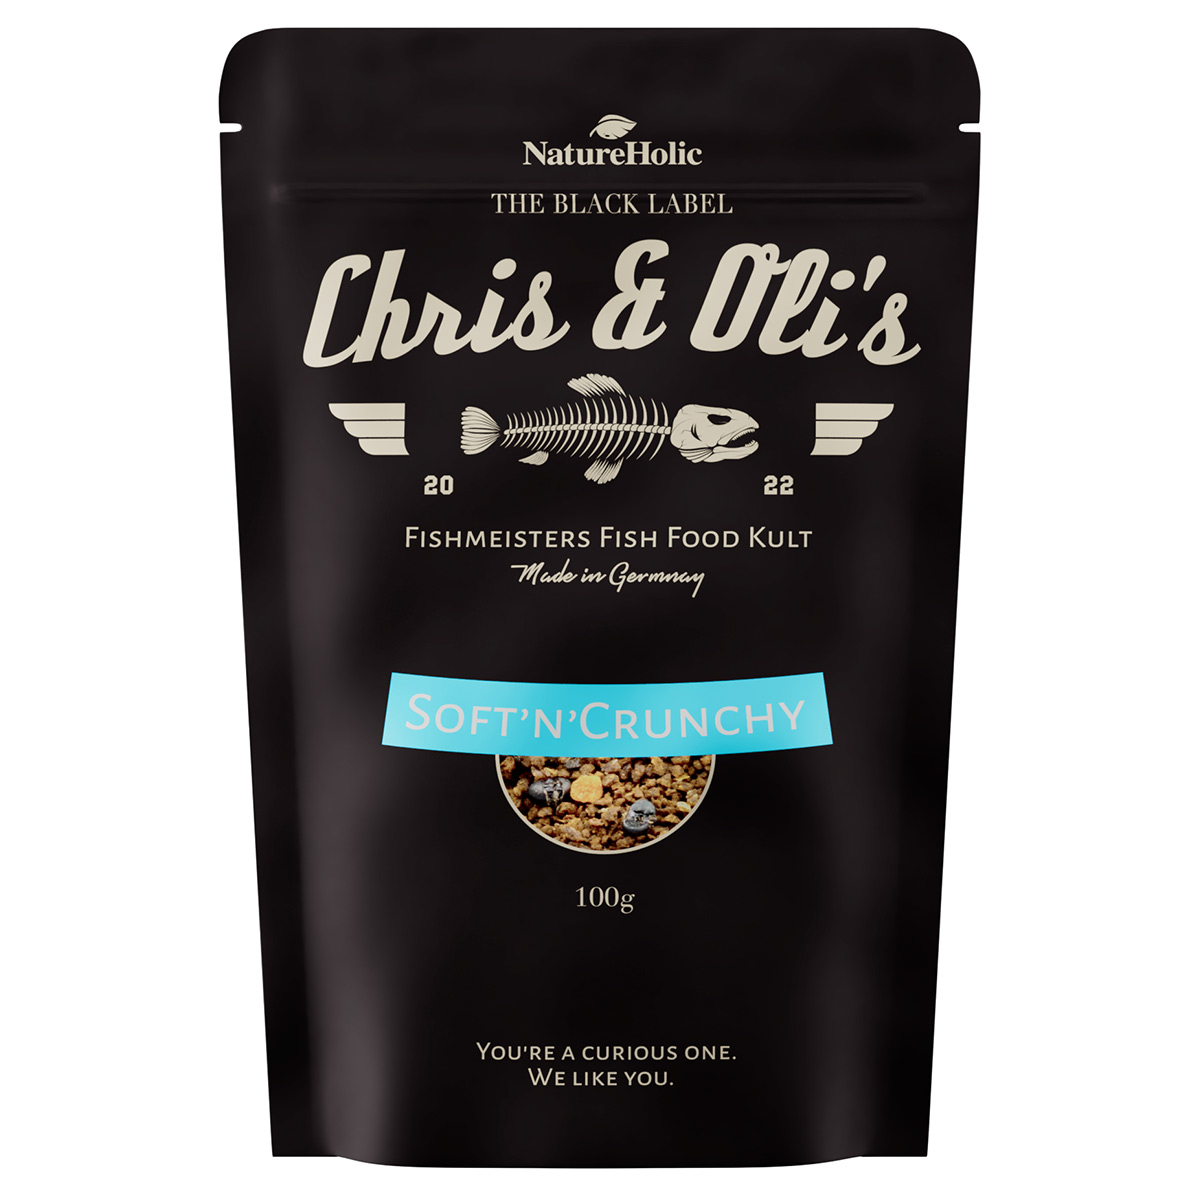 Chris' und Olis Soft'n Crunchy, 100 g